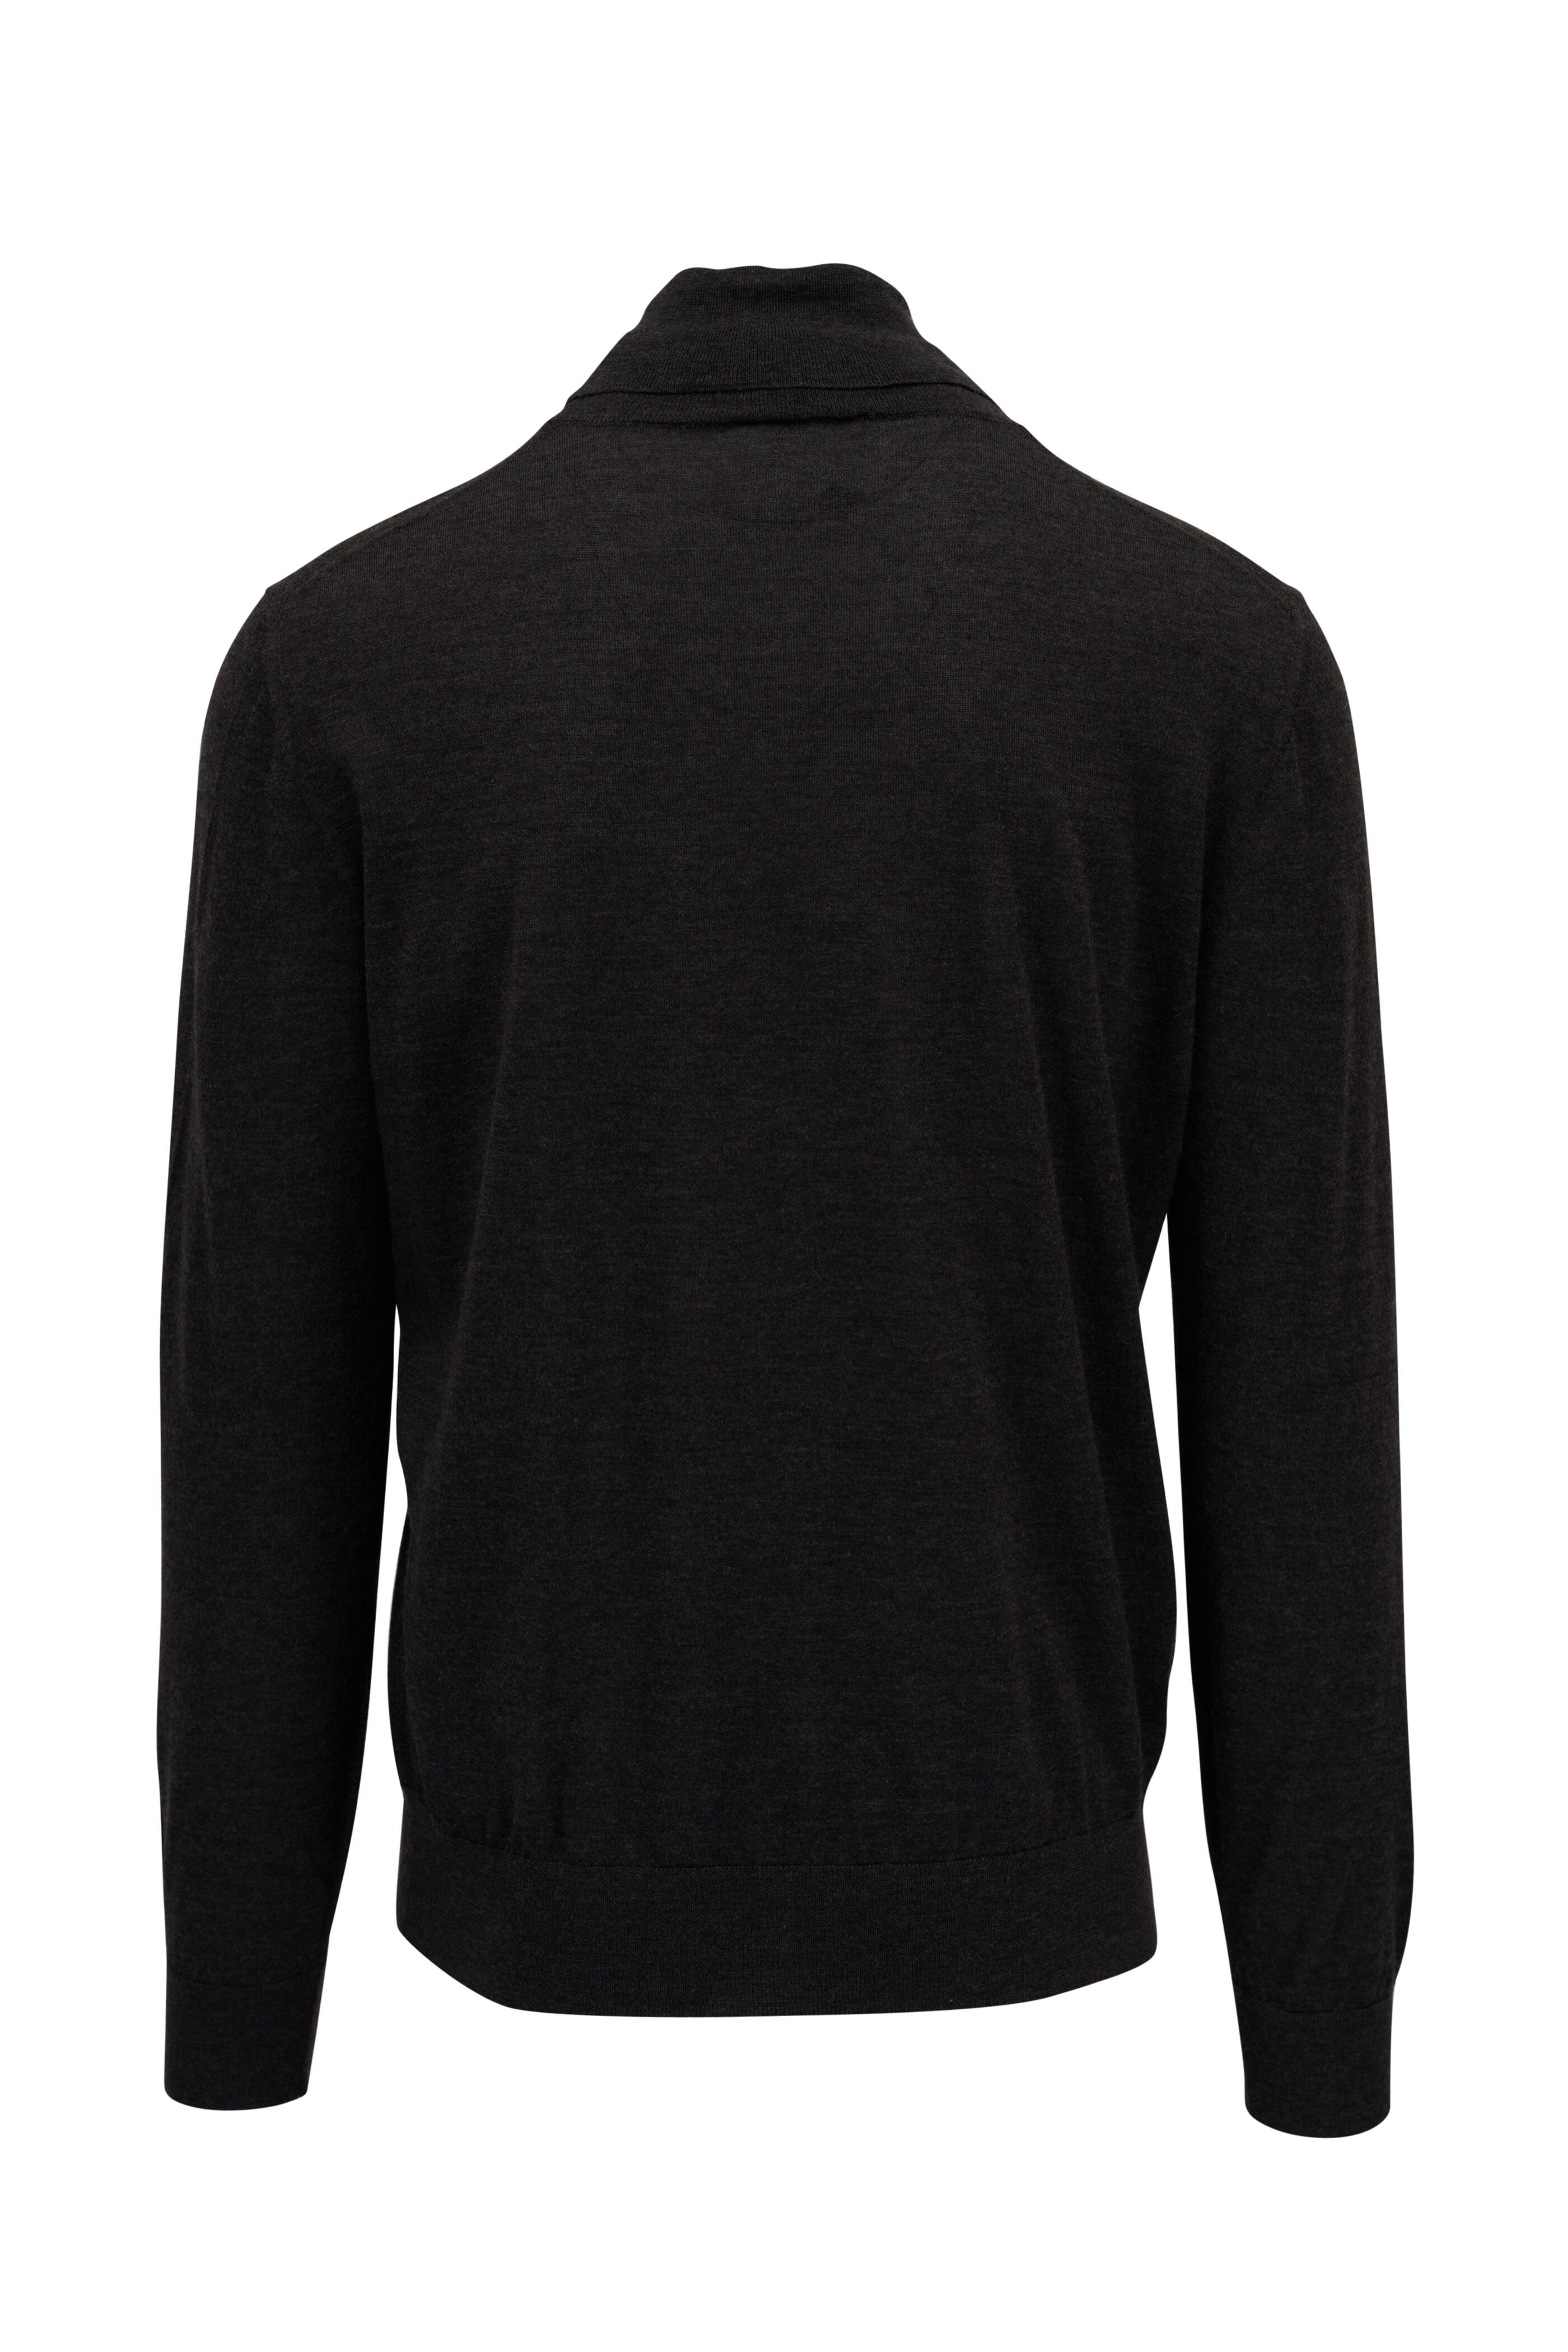 Brioni - Graphite Cashmere & Silk Turtleneck Sweater